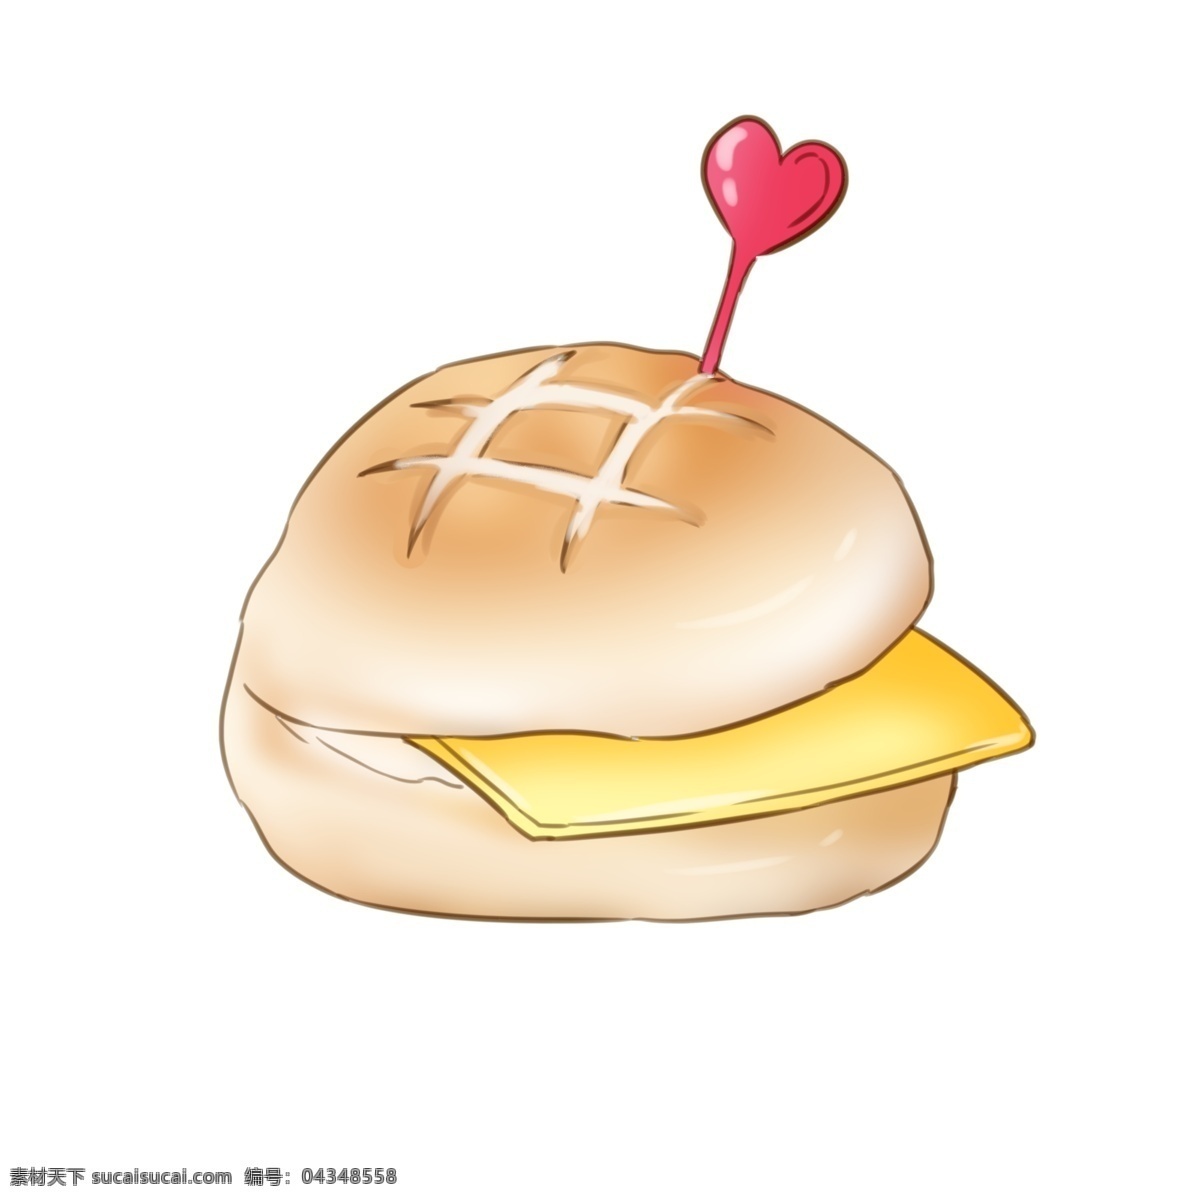 黄色 面包 菠萝 油 插图 立体心形 红色心形 黄色面包 面包插图 装饰面包 夹心面包 菠萝油面包 图案设计